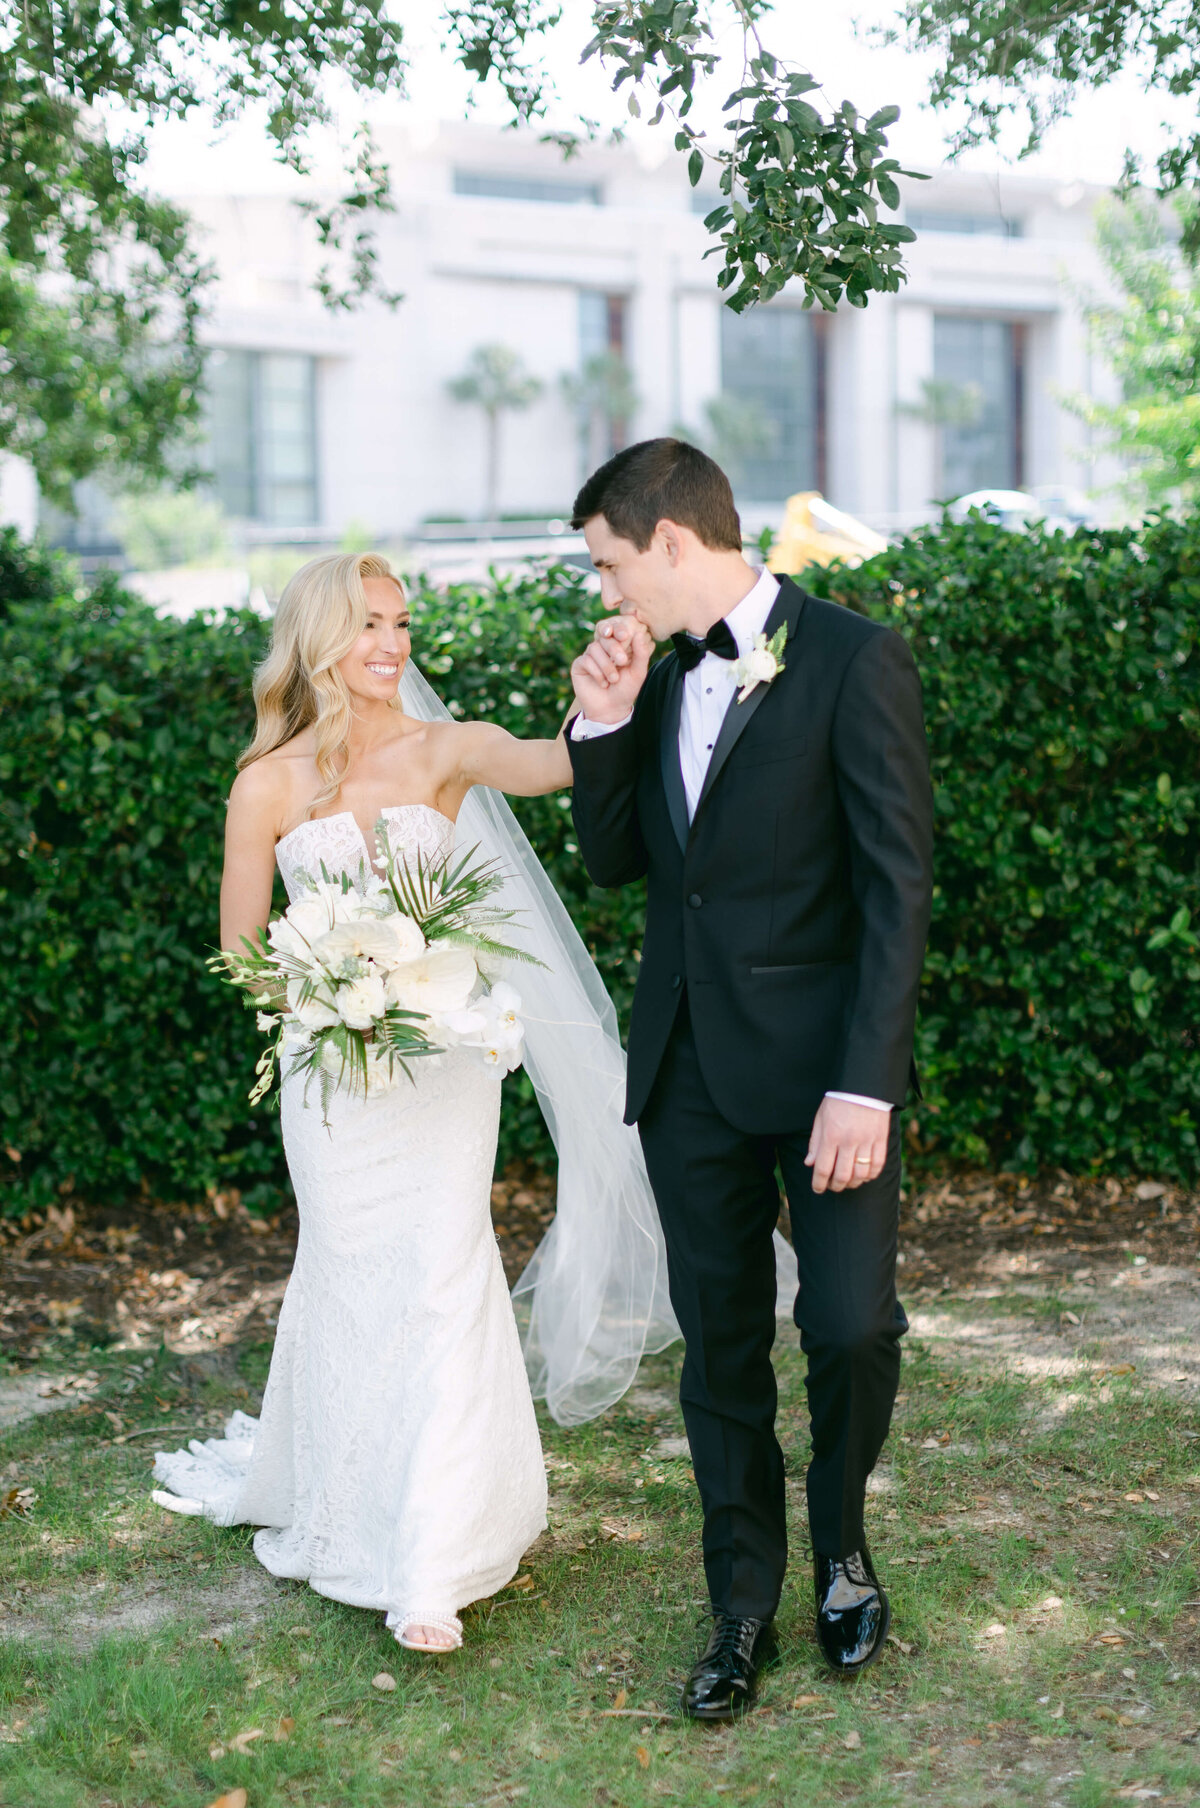 A groom kisses his brides hand.